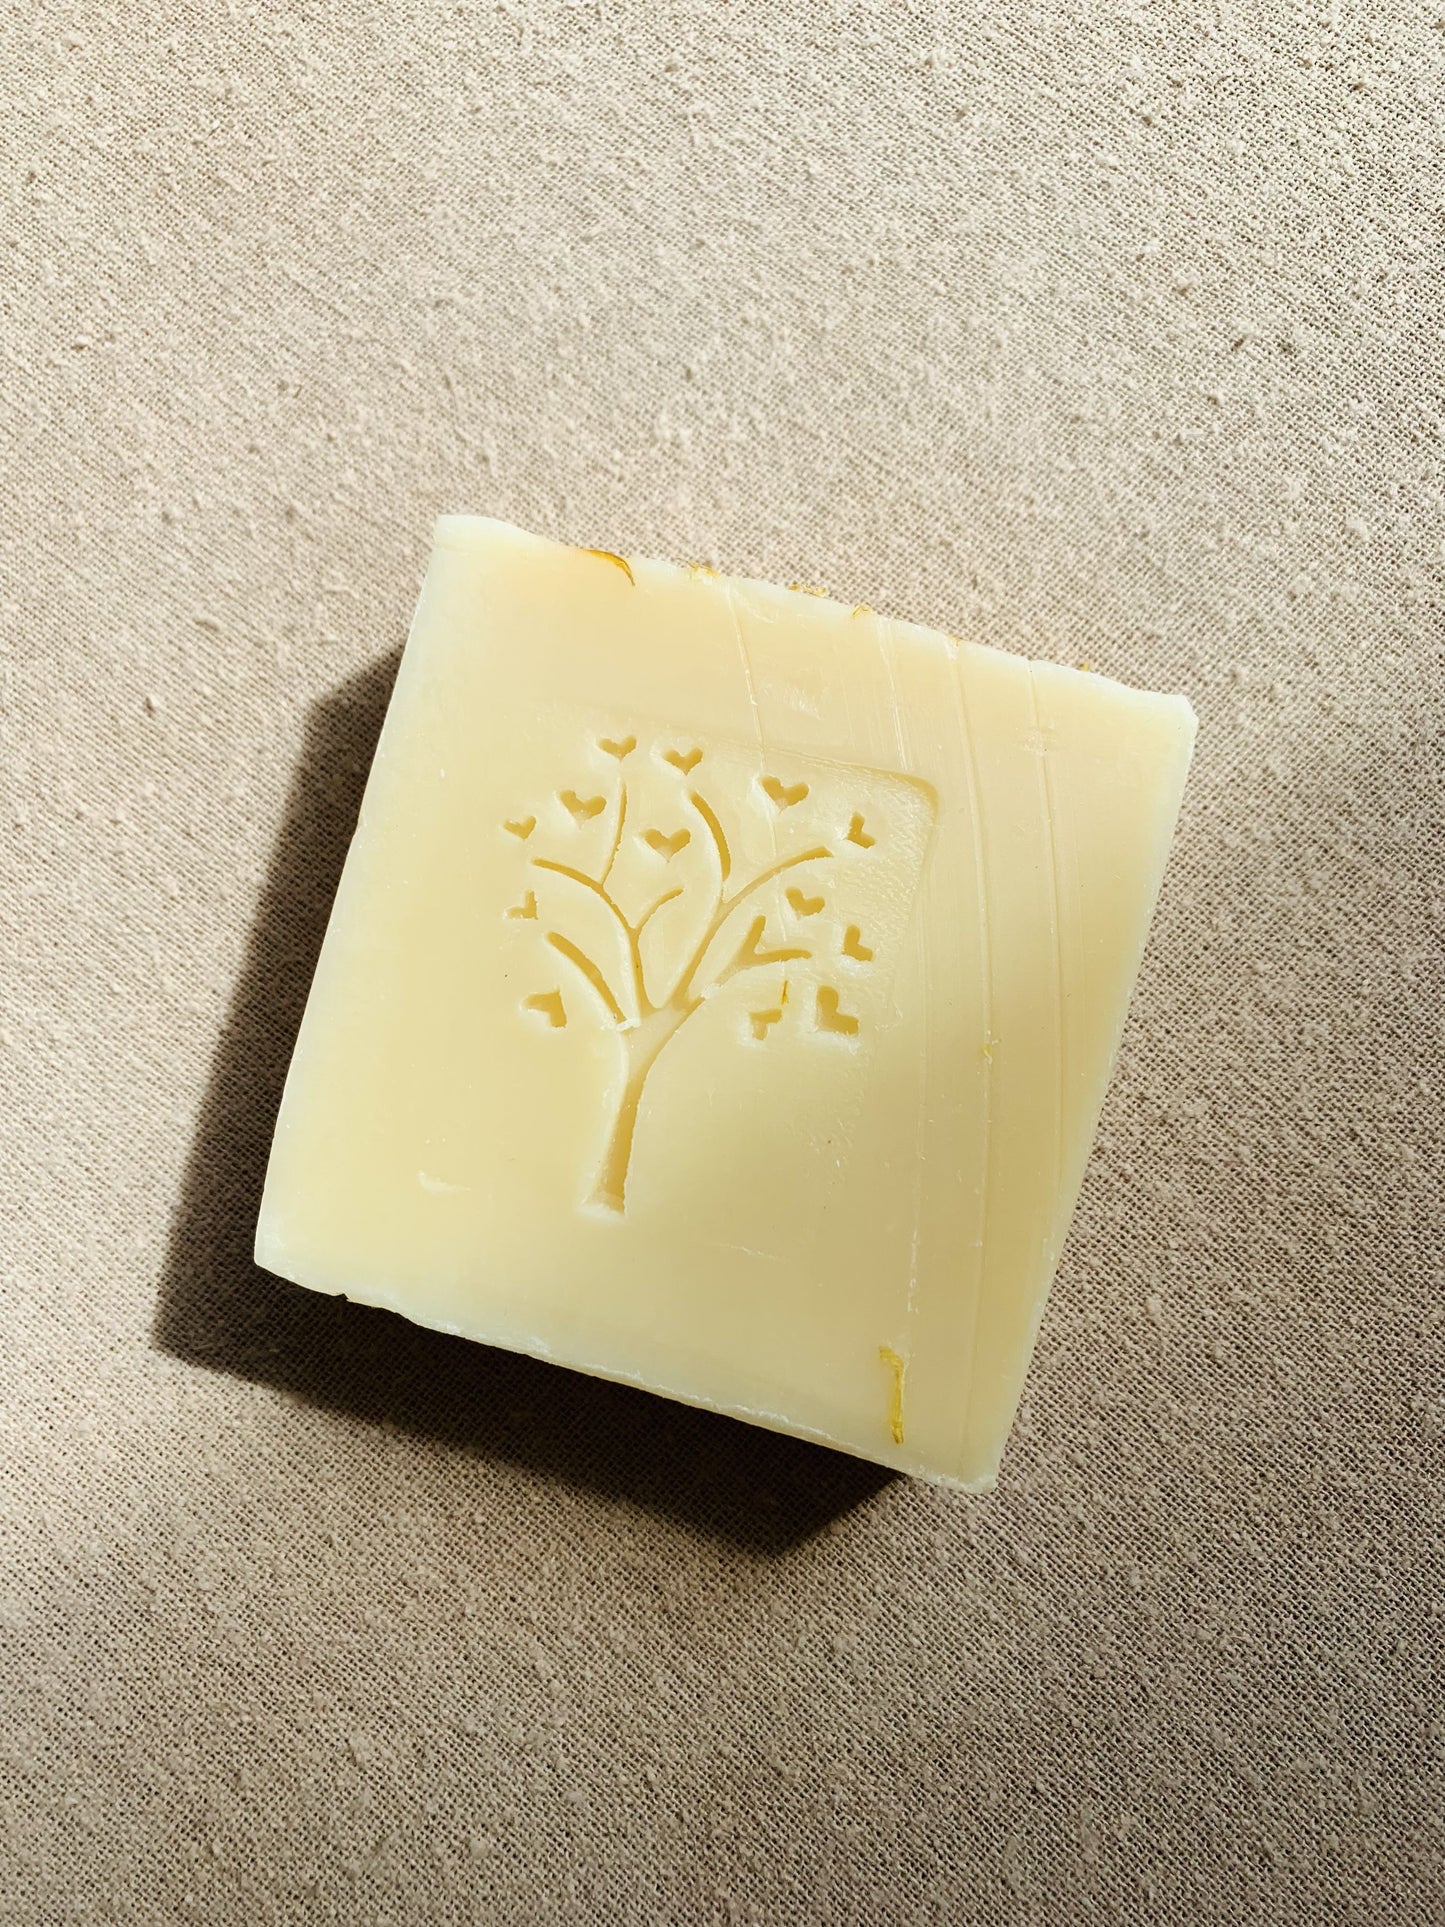 camomile & calendula natural soap